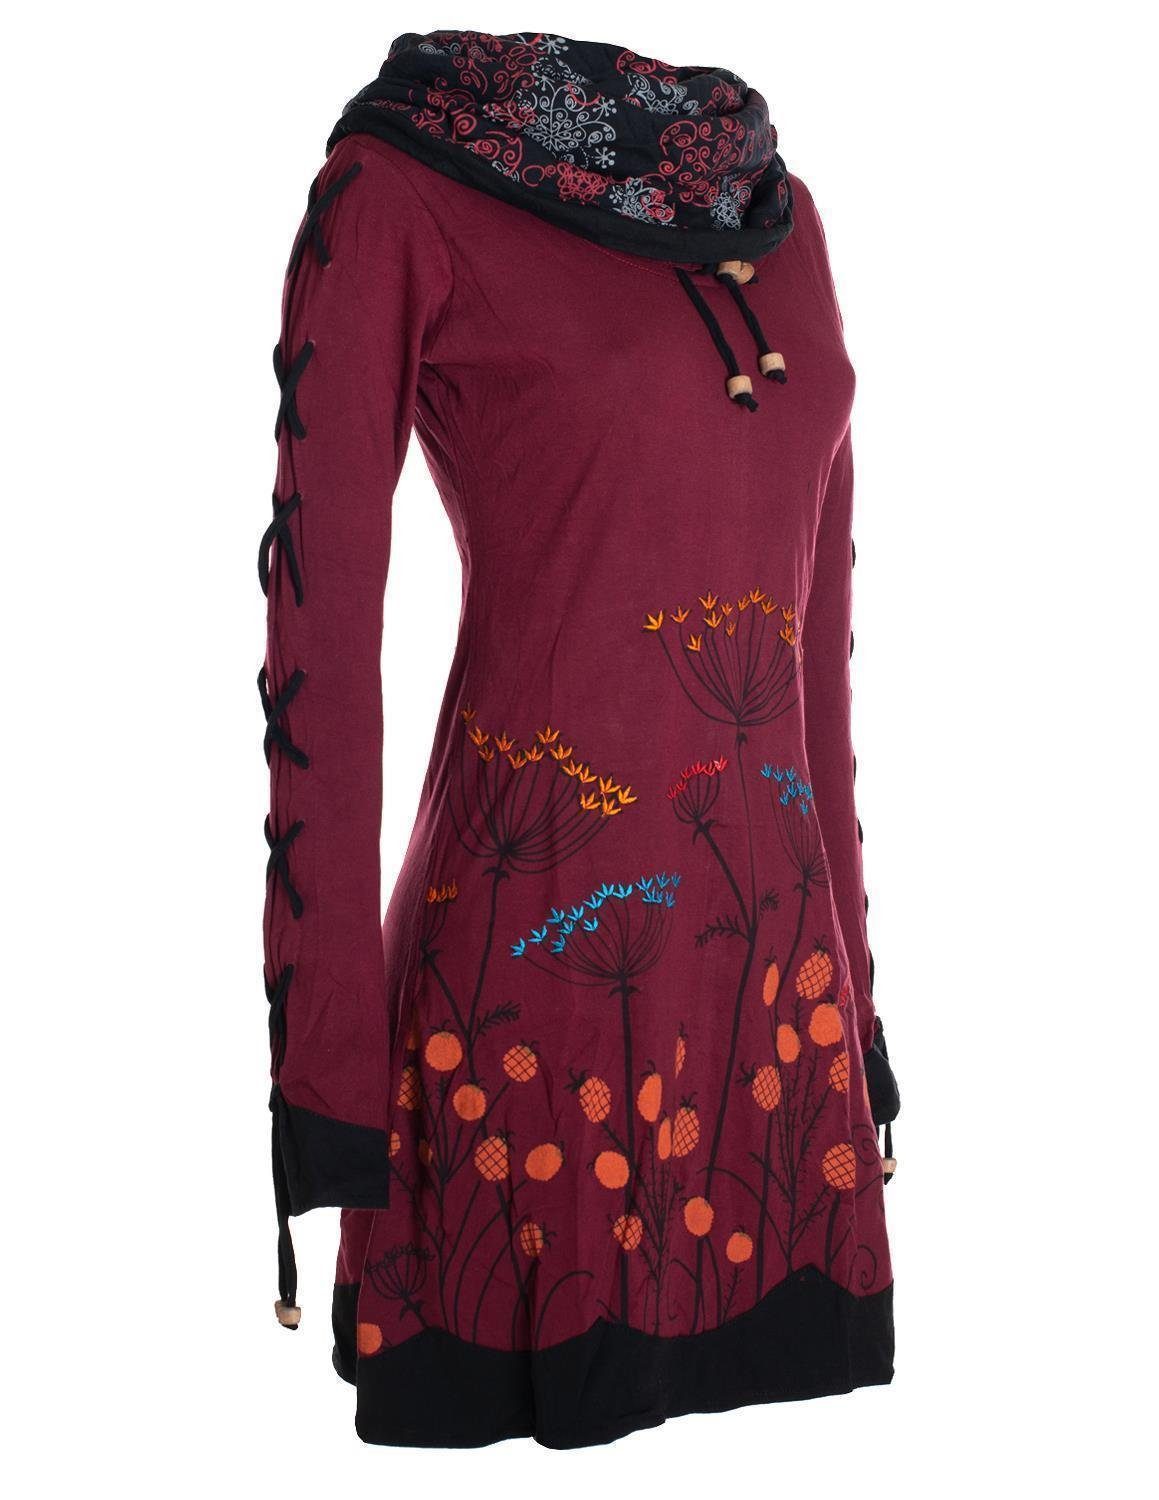 Vishes Jerseykleid Blumenkleid Elfen Style Schalkragen Hippie, dunkelrot mit Langarm-Shirtkleid Boho